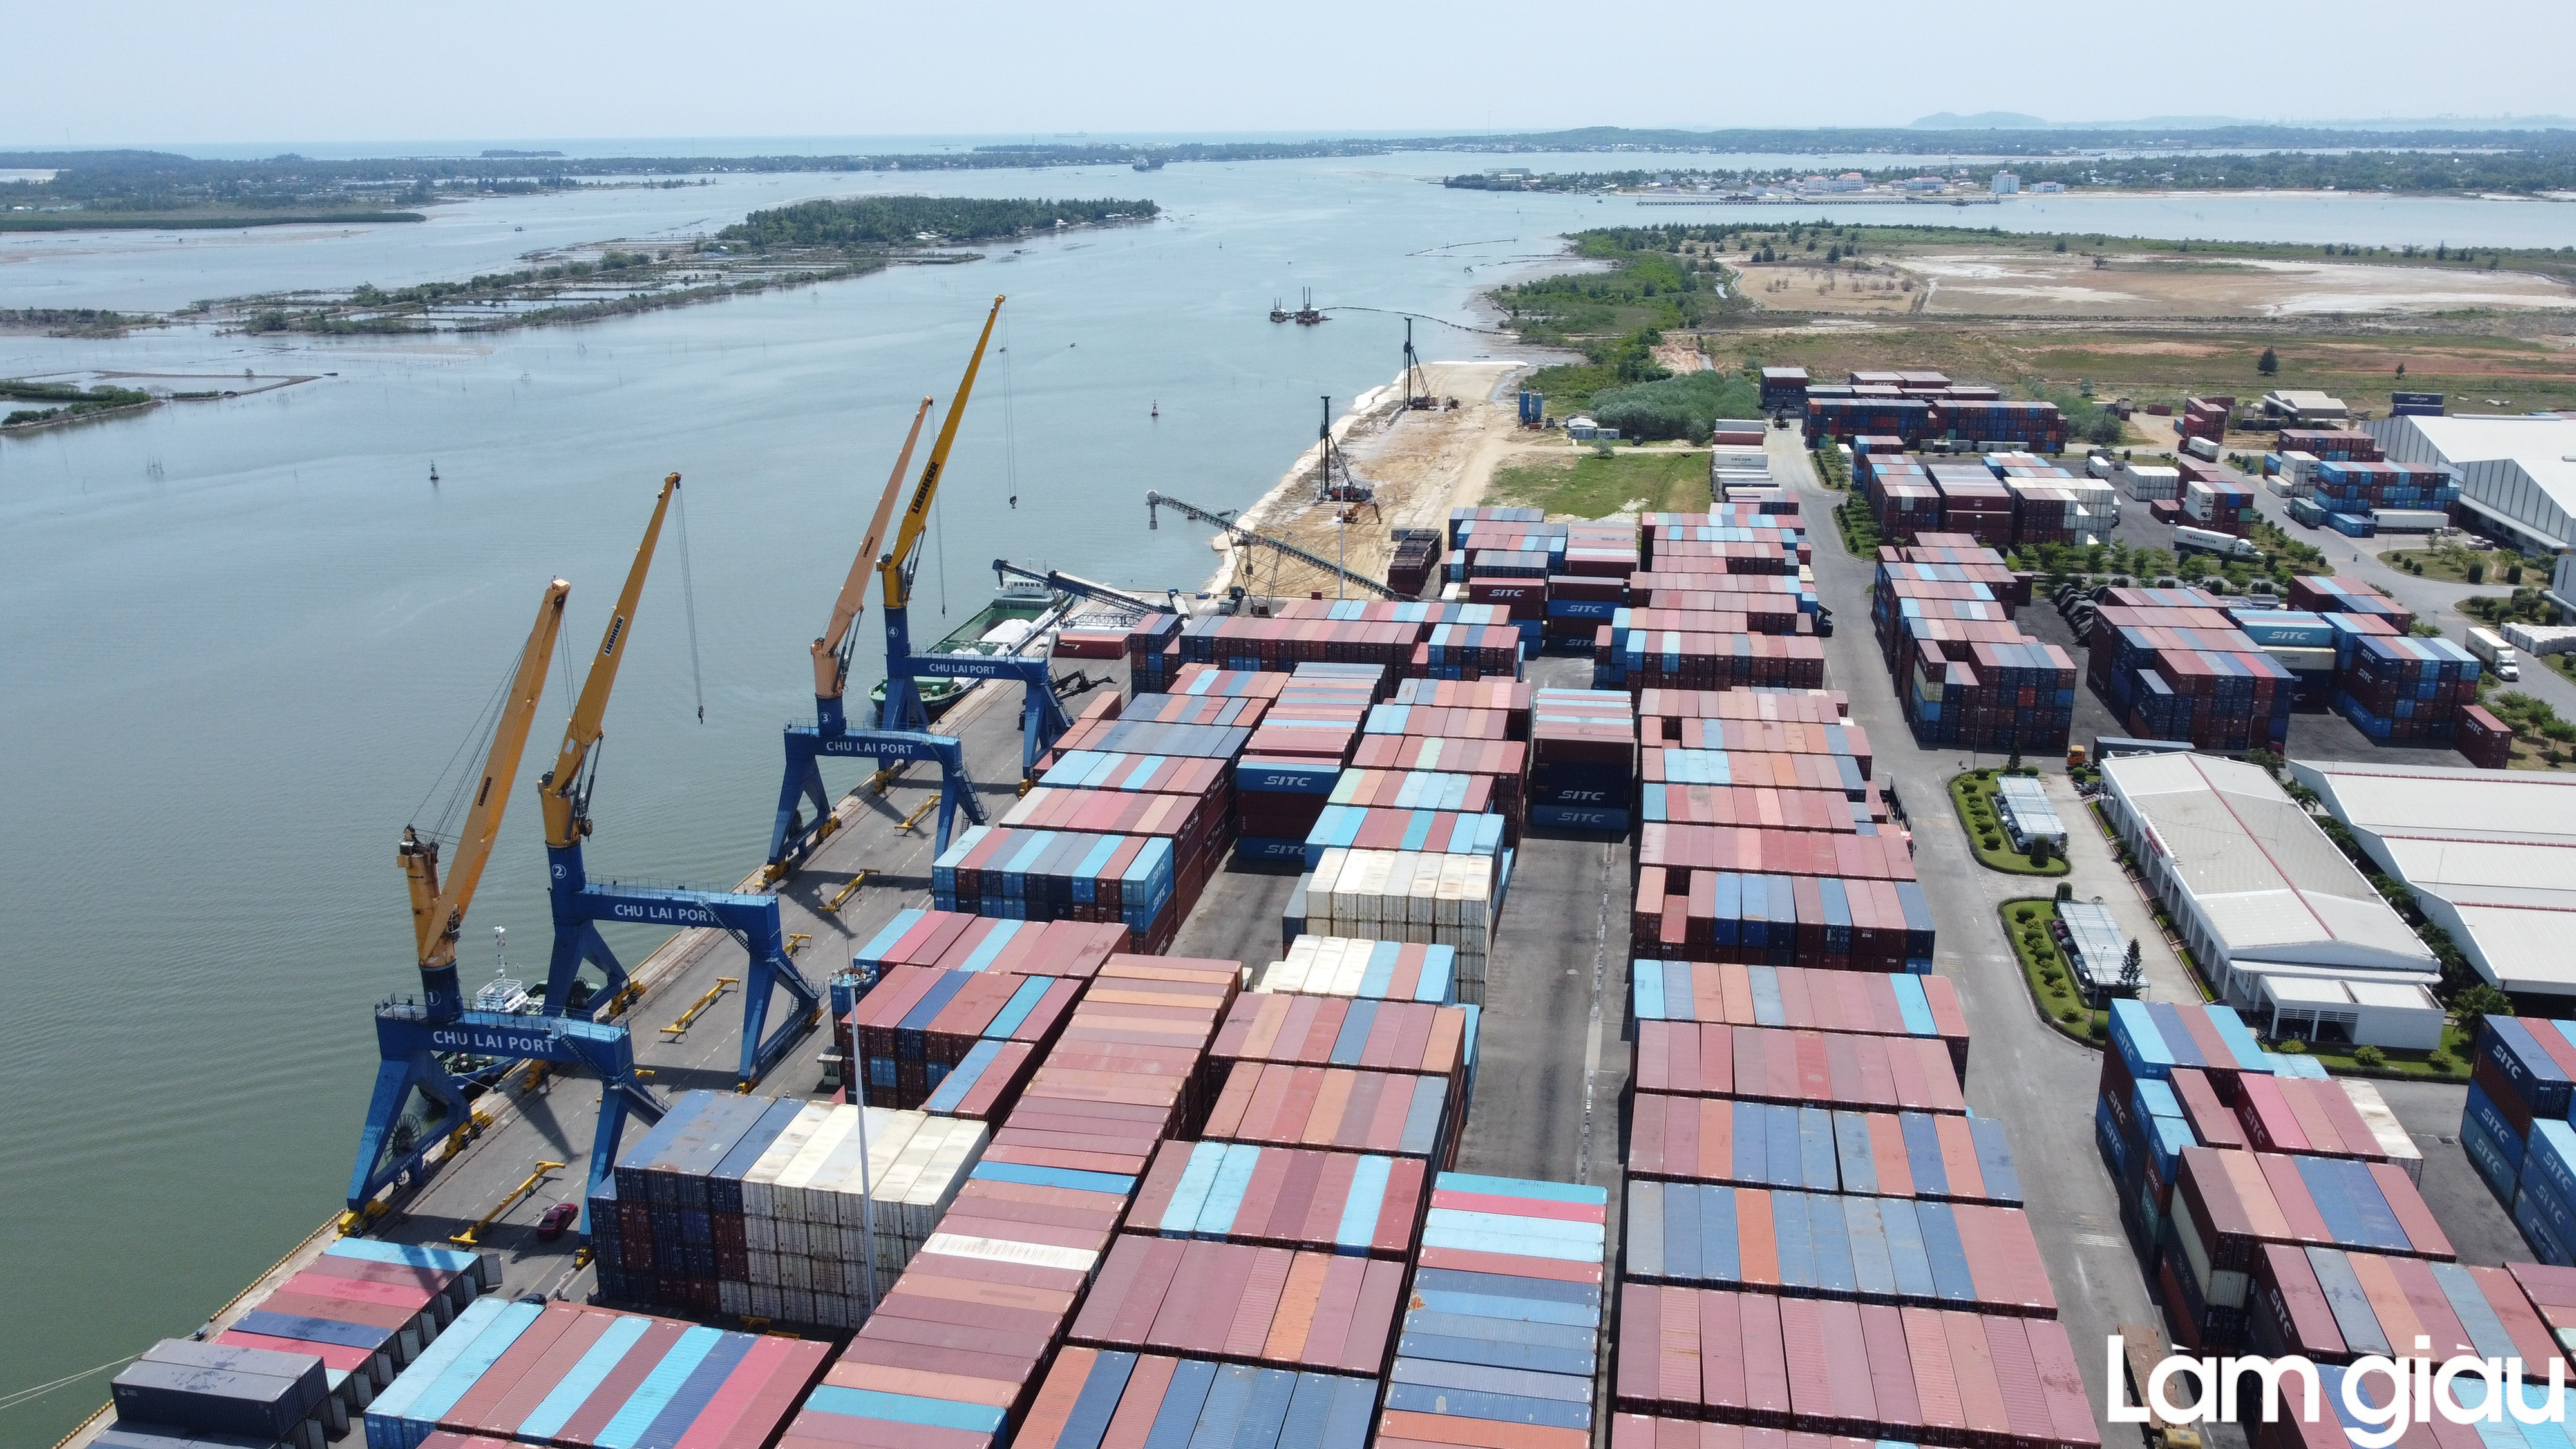 Quảng Nam: Toàn cảnh Khu cảng, logistics và phi thuế quan Chu Lai   Trường Hải sẽ mở rộng quy hoạch